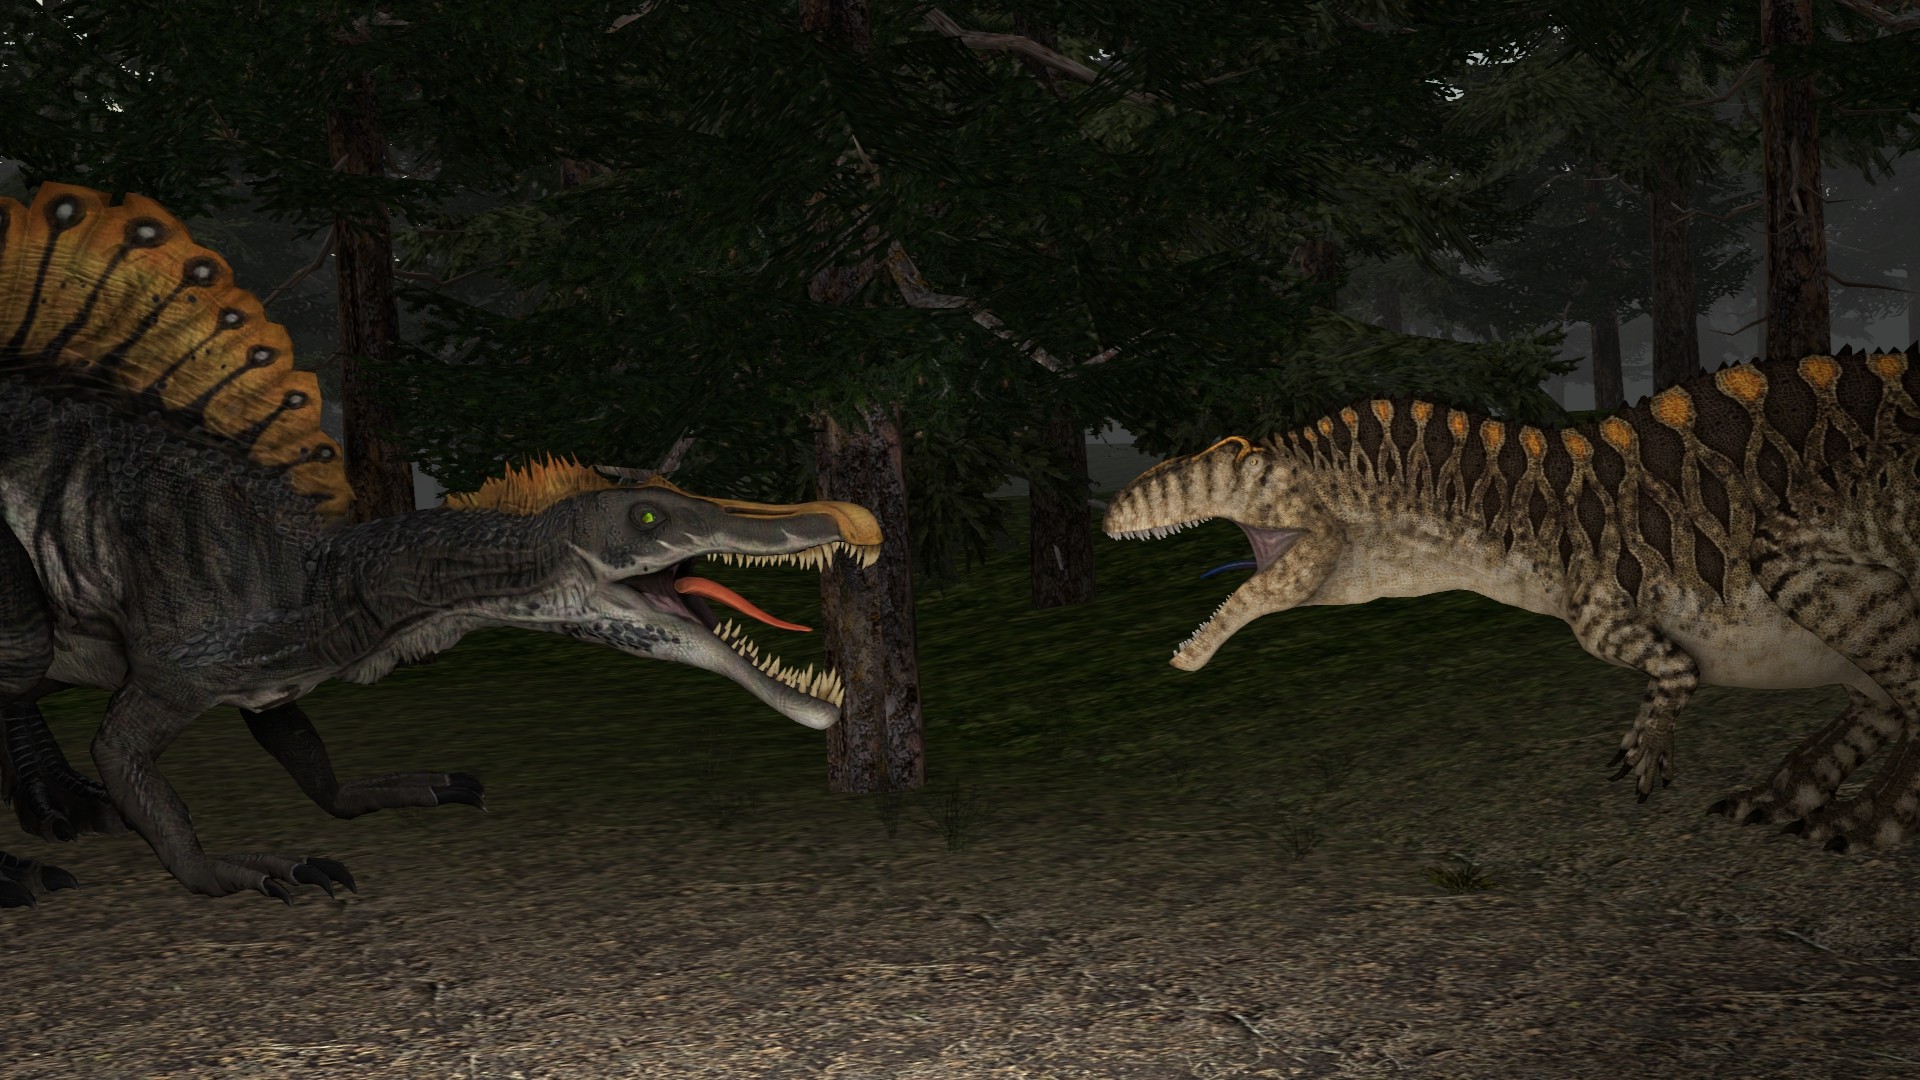 1920x1080 ... kongzillarex619 Spinosaurus vs Acrocanthosaurus whos wins? by  kongzillarex619